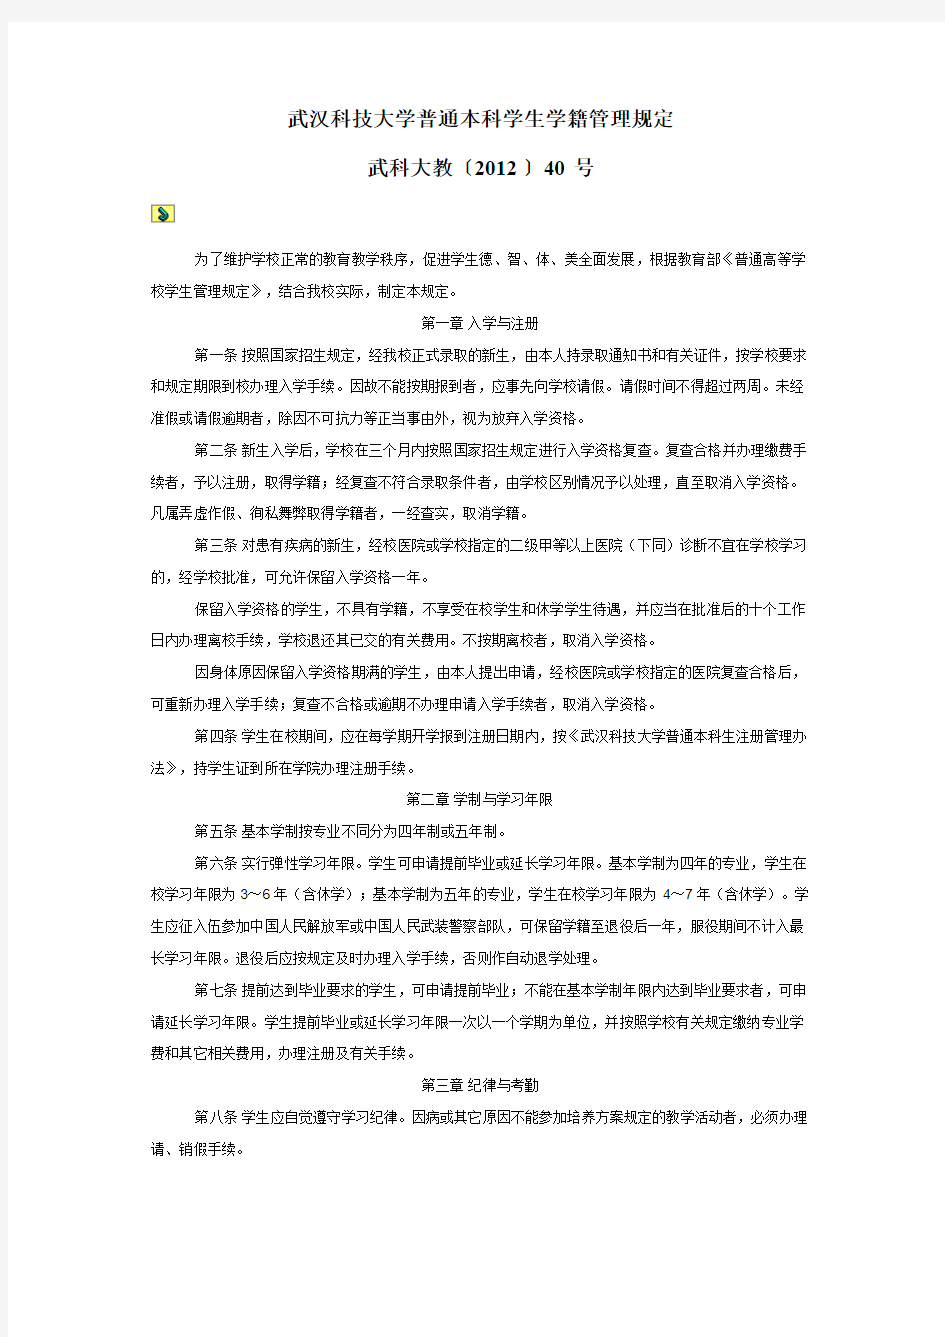 武汉科技大学普通本科学生学籍管理规定